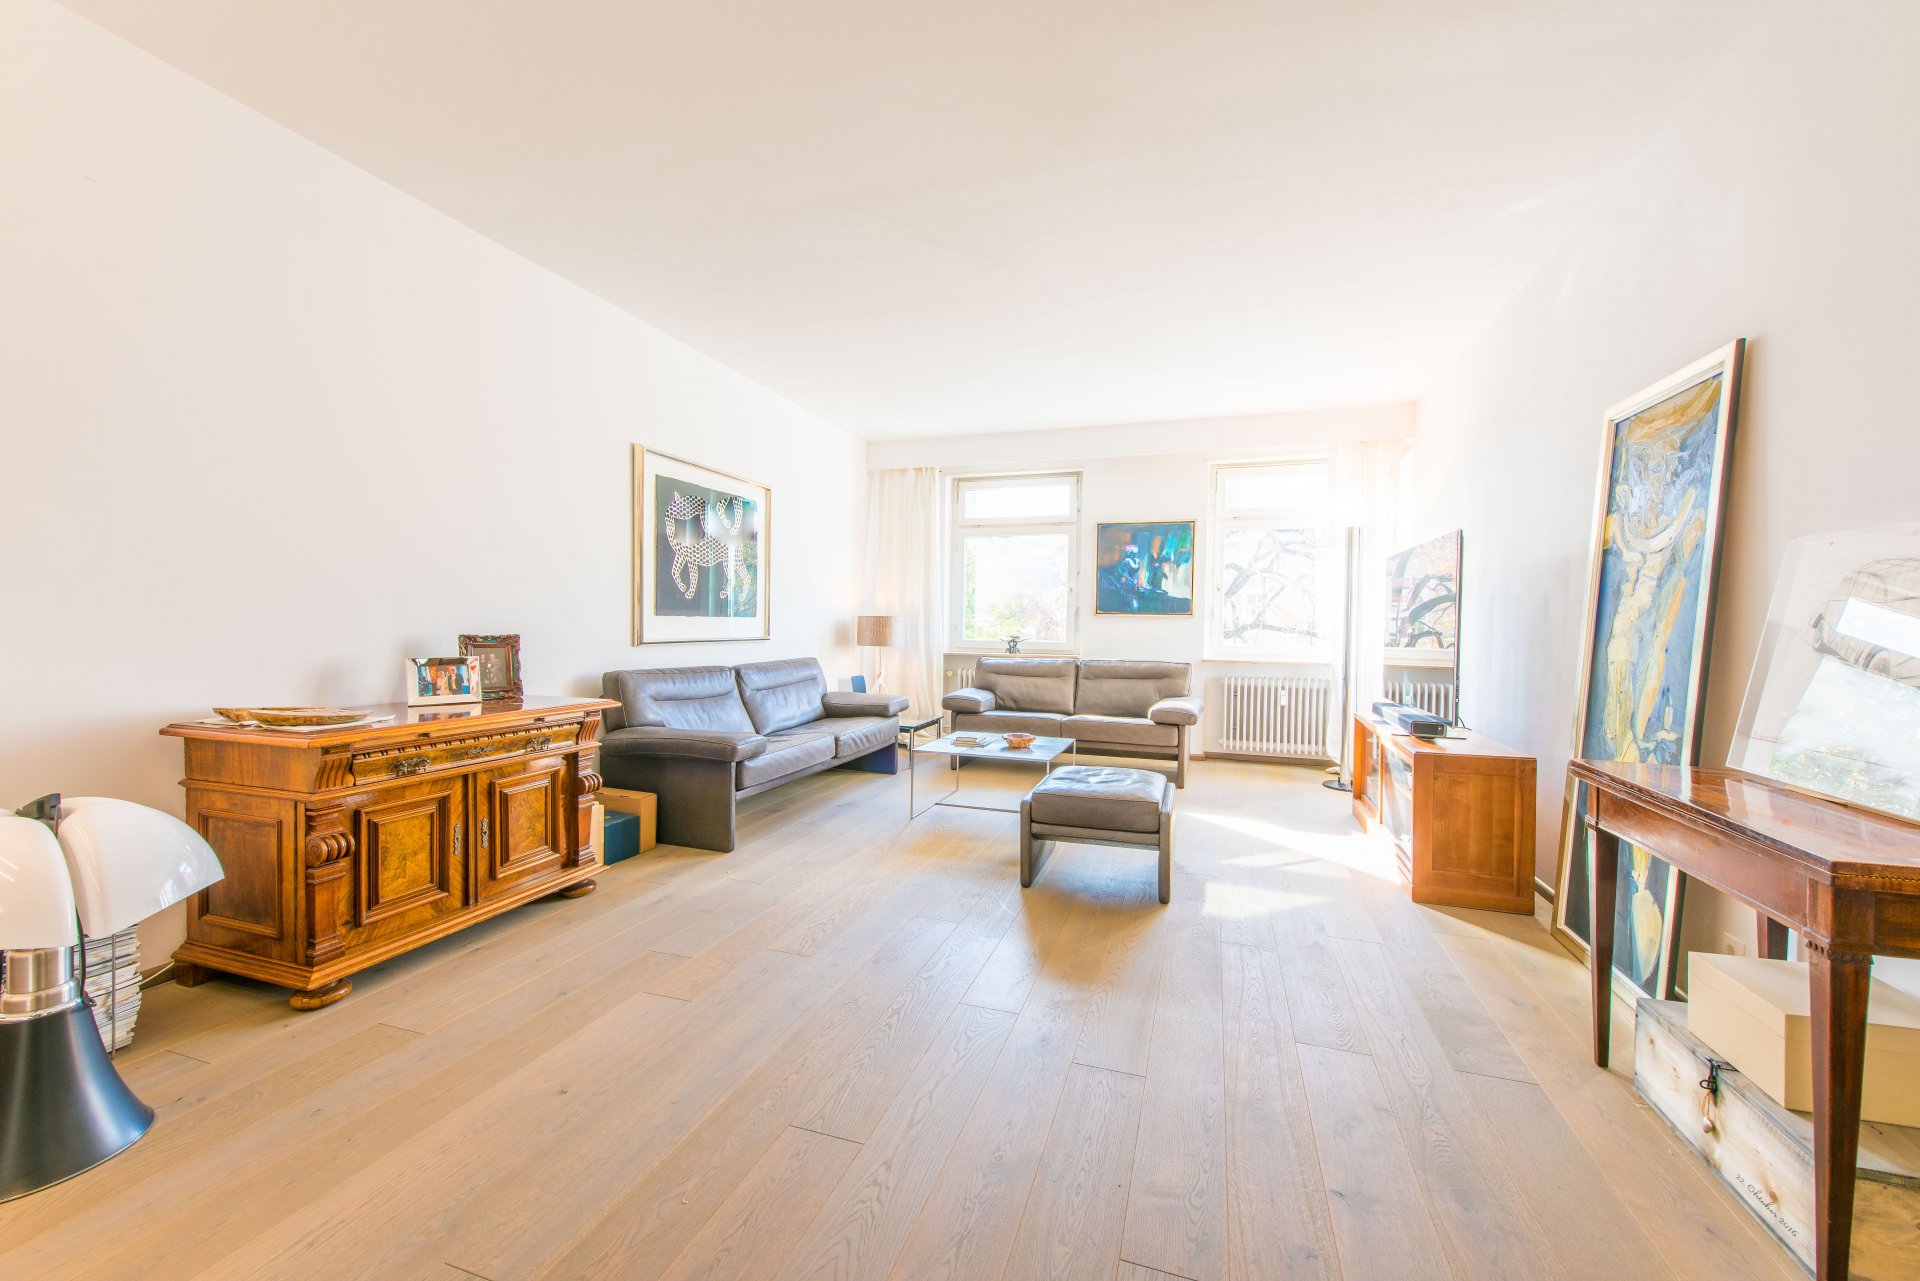 Sämtliche Räume der Wohnung sind mit geöltem Eichenparkett Typ Landhausdiele ausgelegt - Oliver Reifferscheid - Immobilienmakler Darmstadt